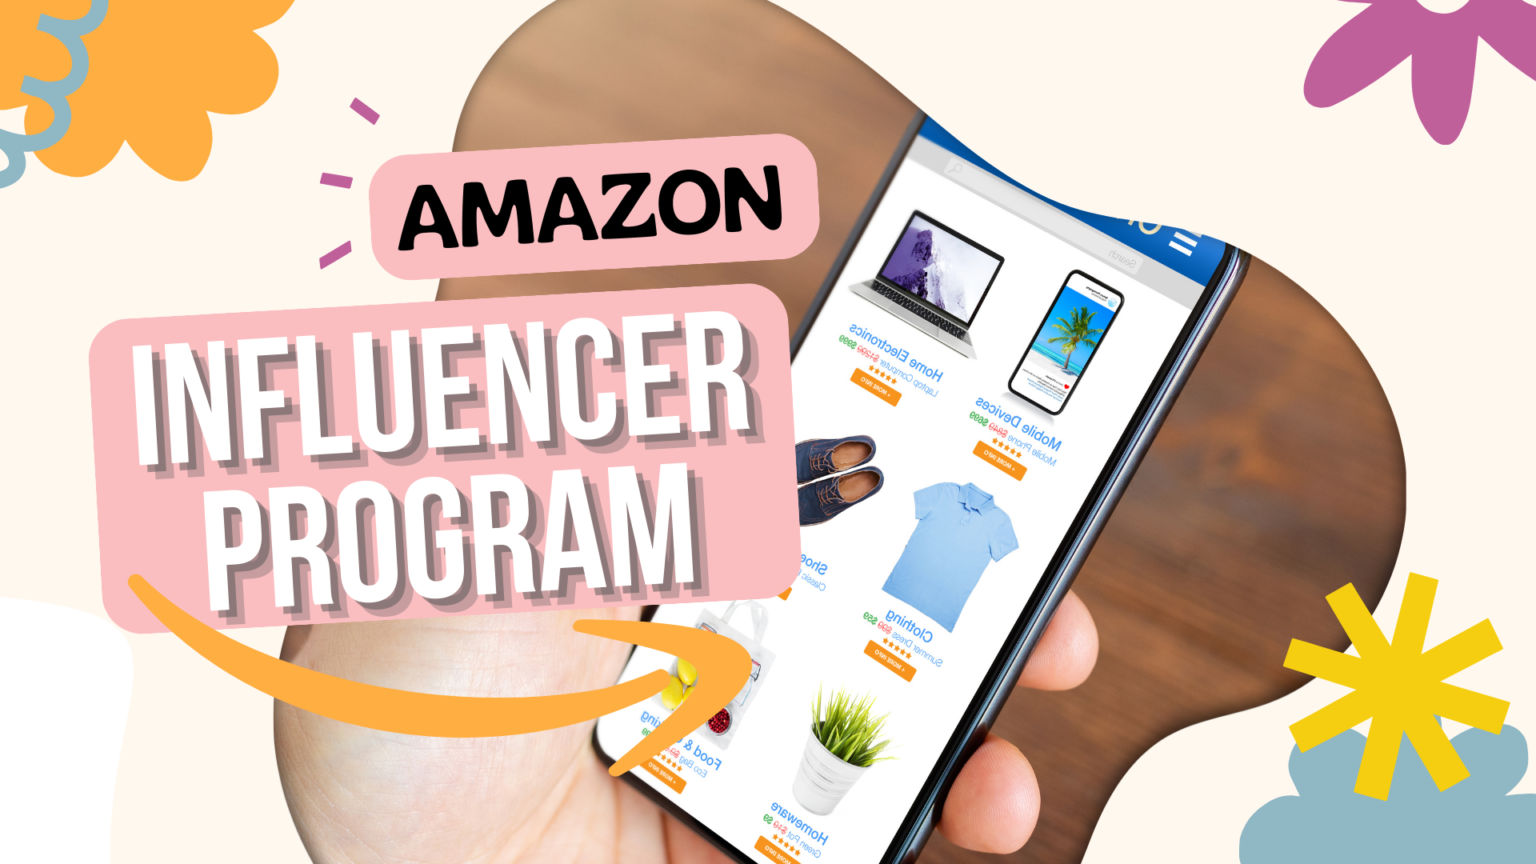 Amazon-infuencer-program-make-money-onli